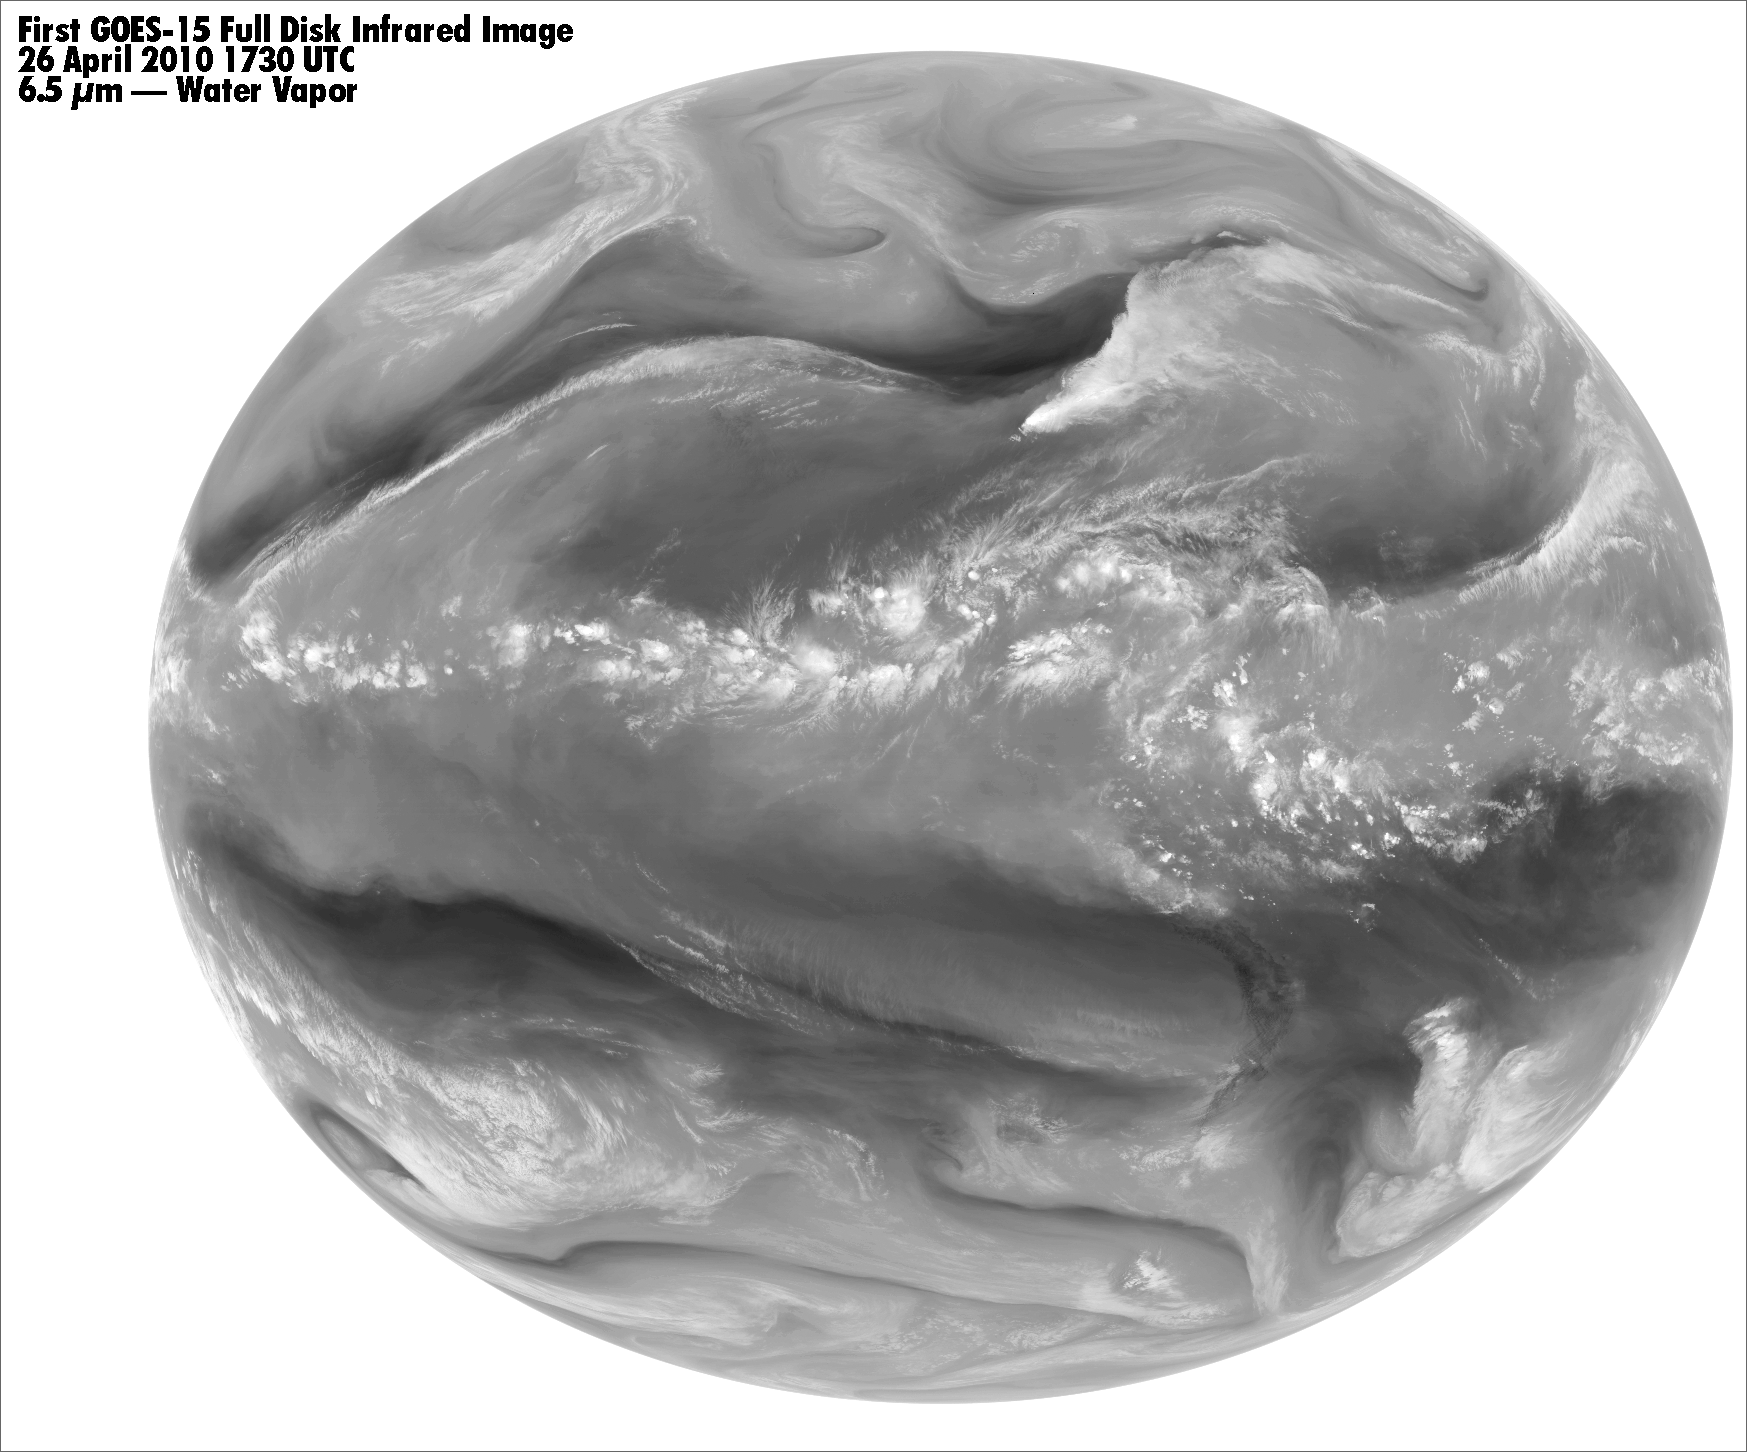 First GOES-15 Full Disk IR Image, 26 April 2010, 1730 UTC; 6.5 µm - water vapor